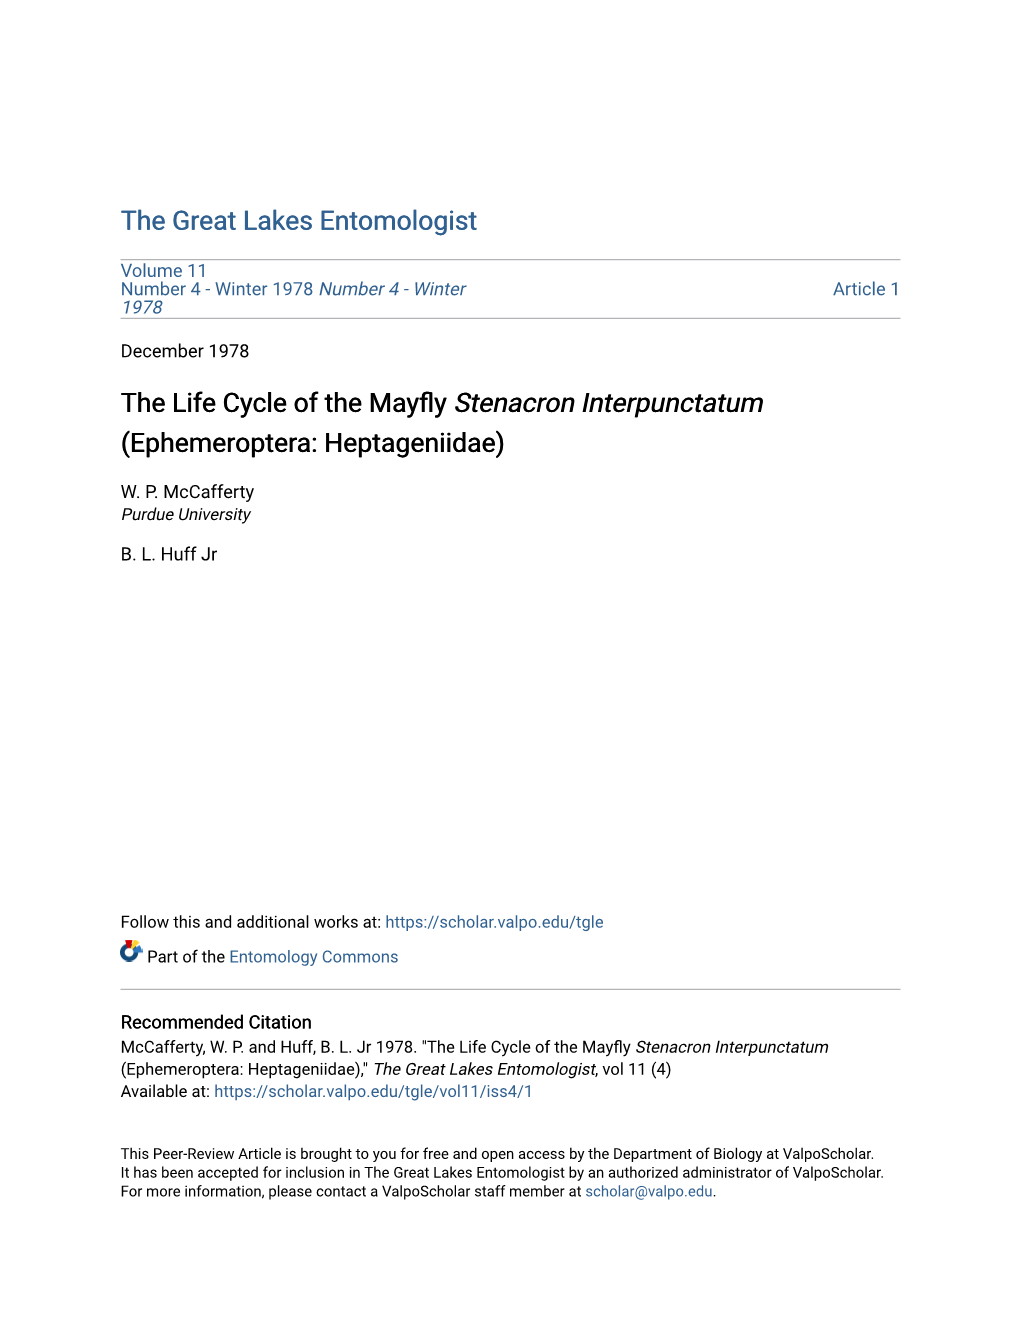 The Life Cycle of the Mayfly Stenacron Interpunctatum (Ephemeroptera: Heptageniidae)